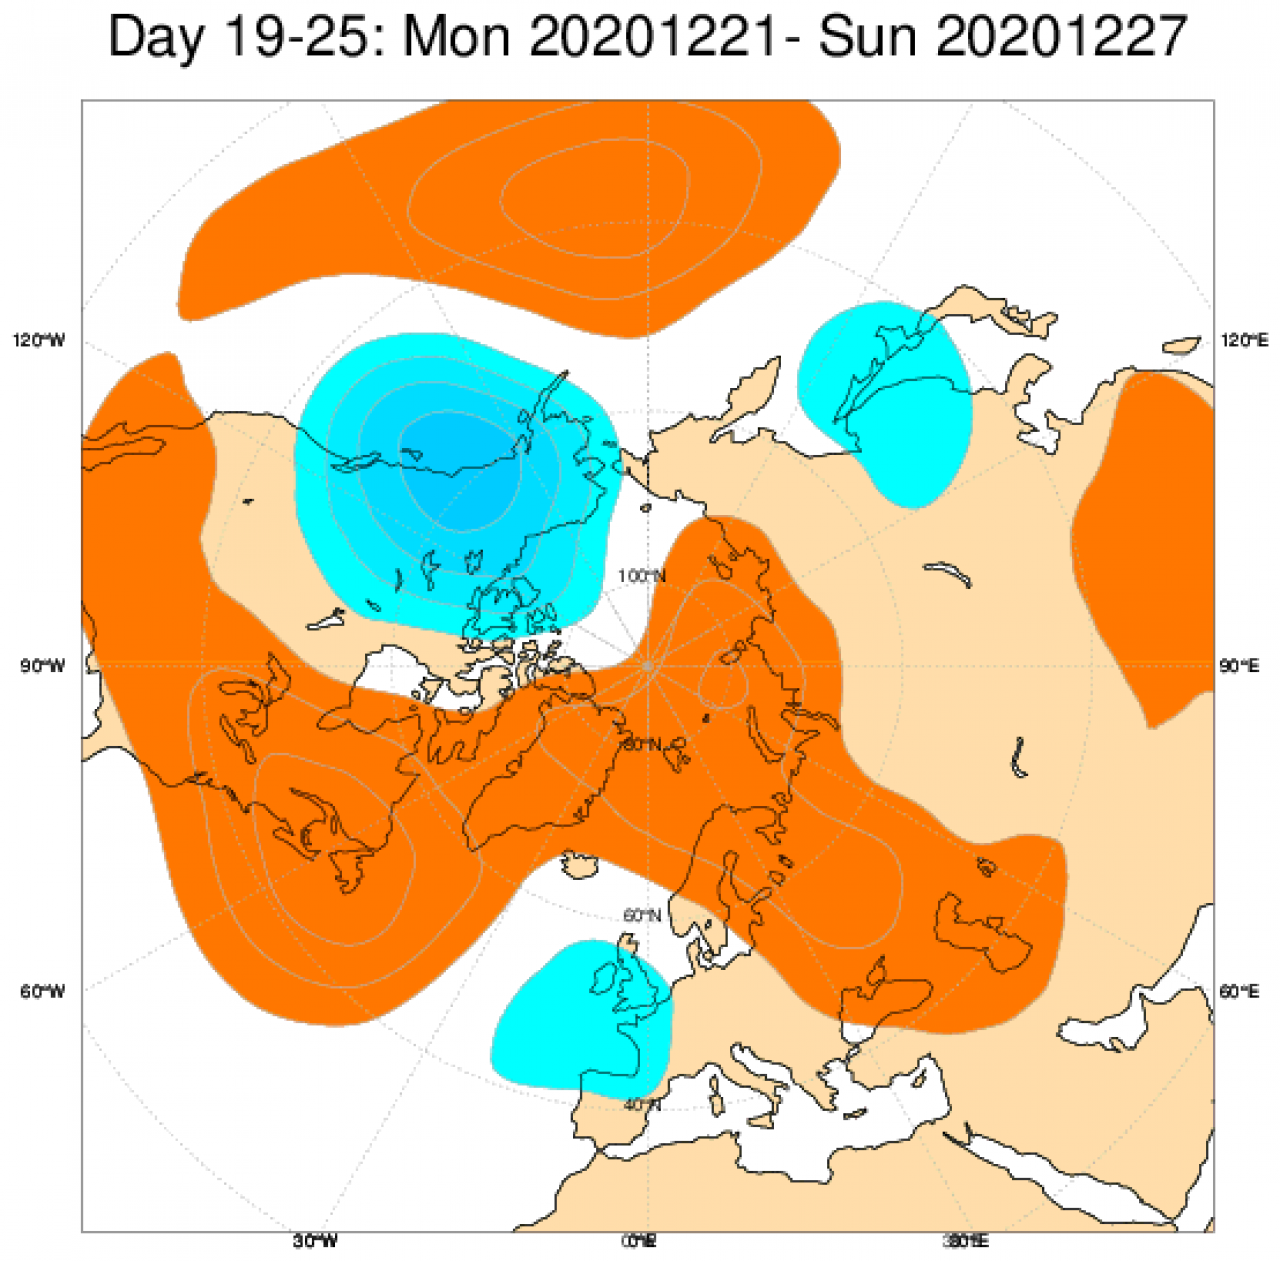 Le anomalie di pressione e geopotenziale secondo il modello ECMWF mediate nel periodo 21-27 dicembre